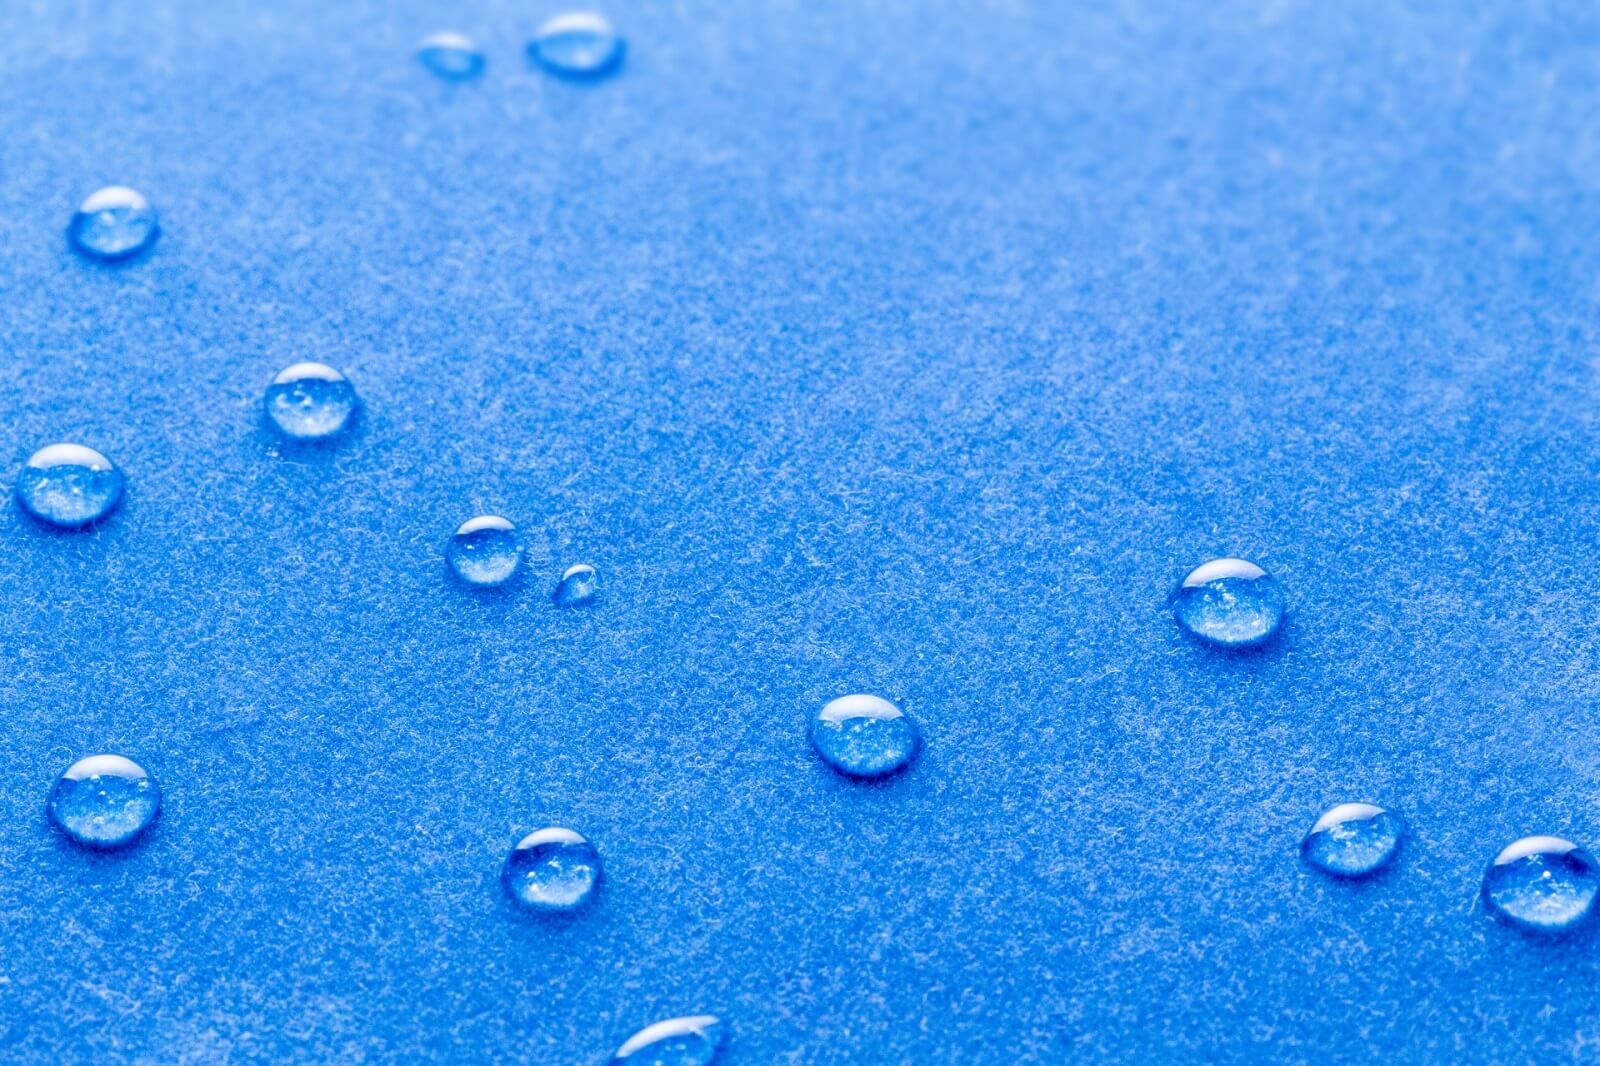 青色のボディにいくつもの水滴がついている様子。撥水加工が施されている